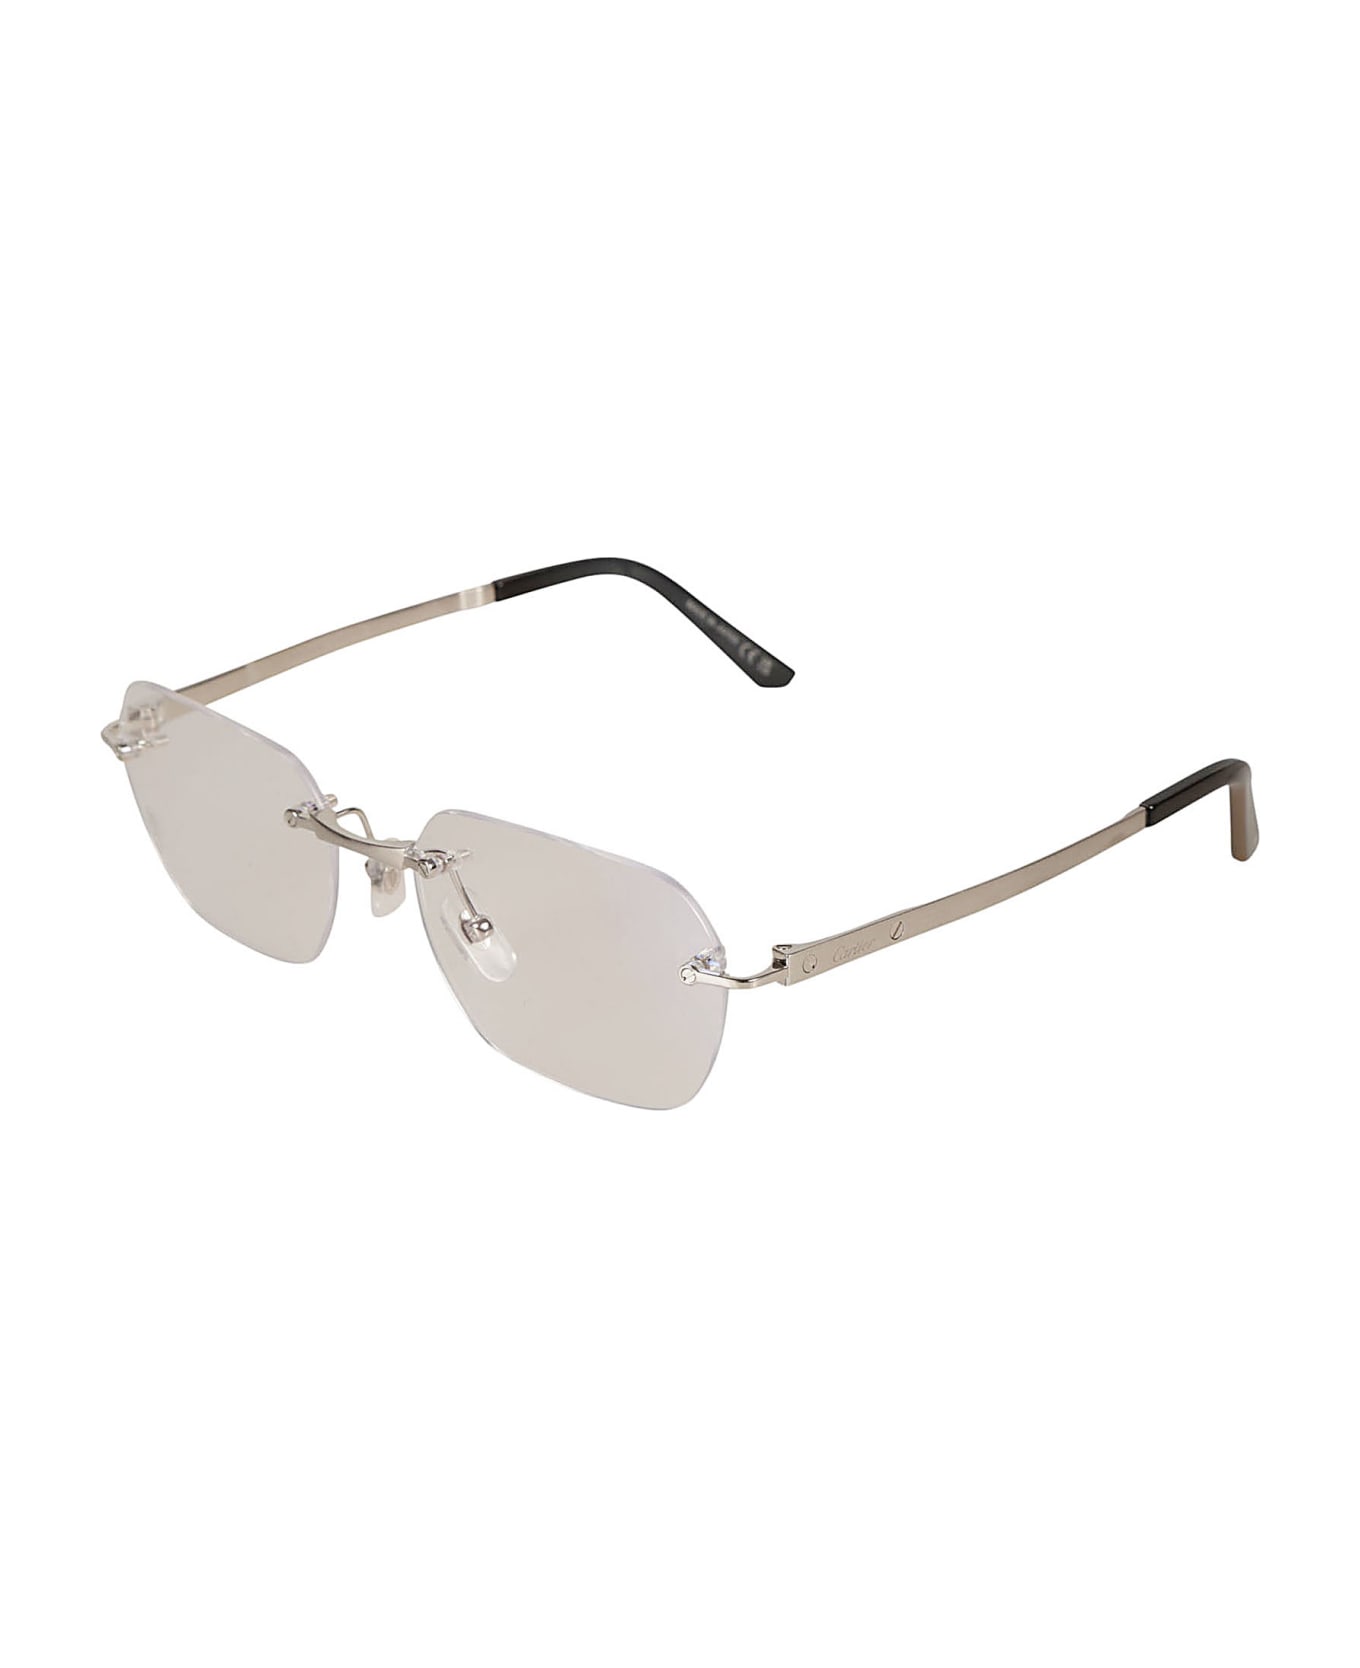 Cartier Eyewear Clear Classic Frameless Sunglasses Sunglasses - Silver